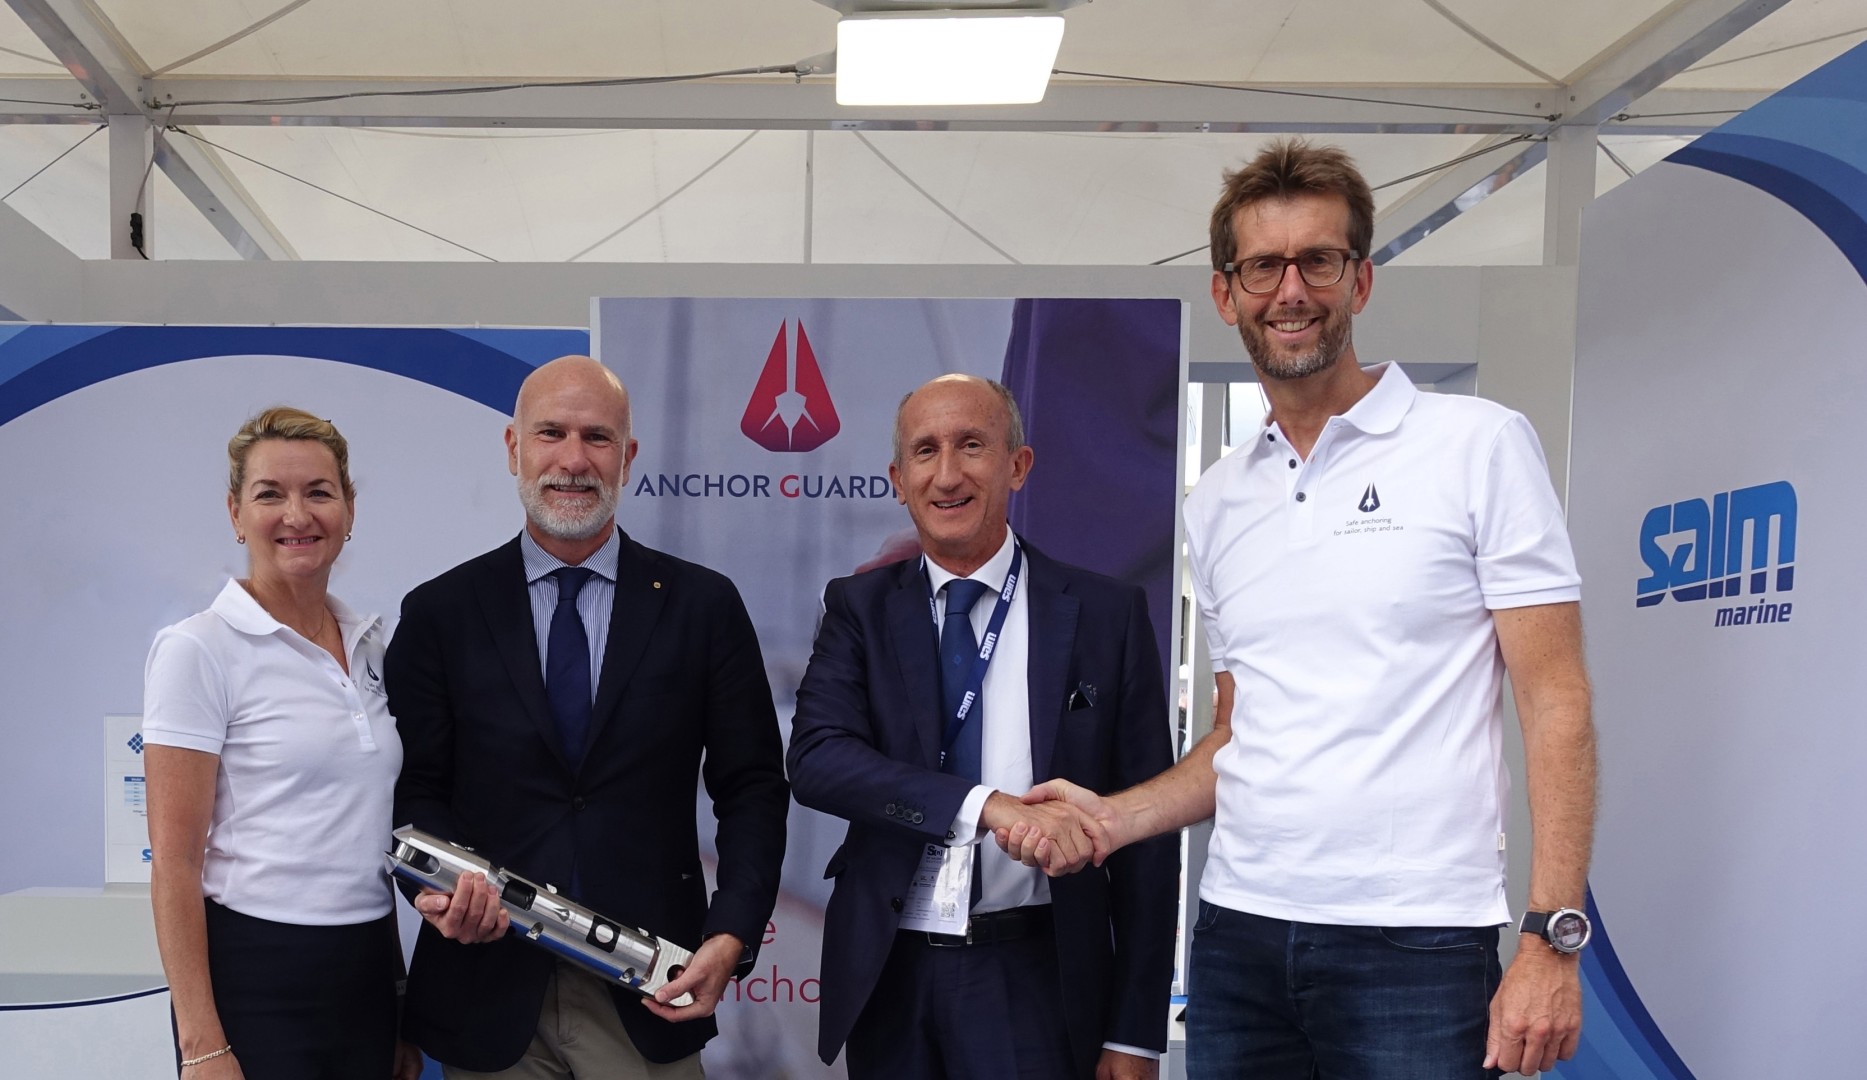 Swiss Ocean Tech & SAIM Marine announce their strategic partnership